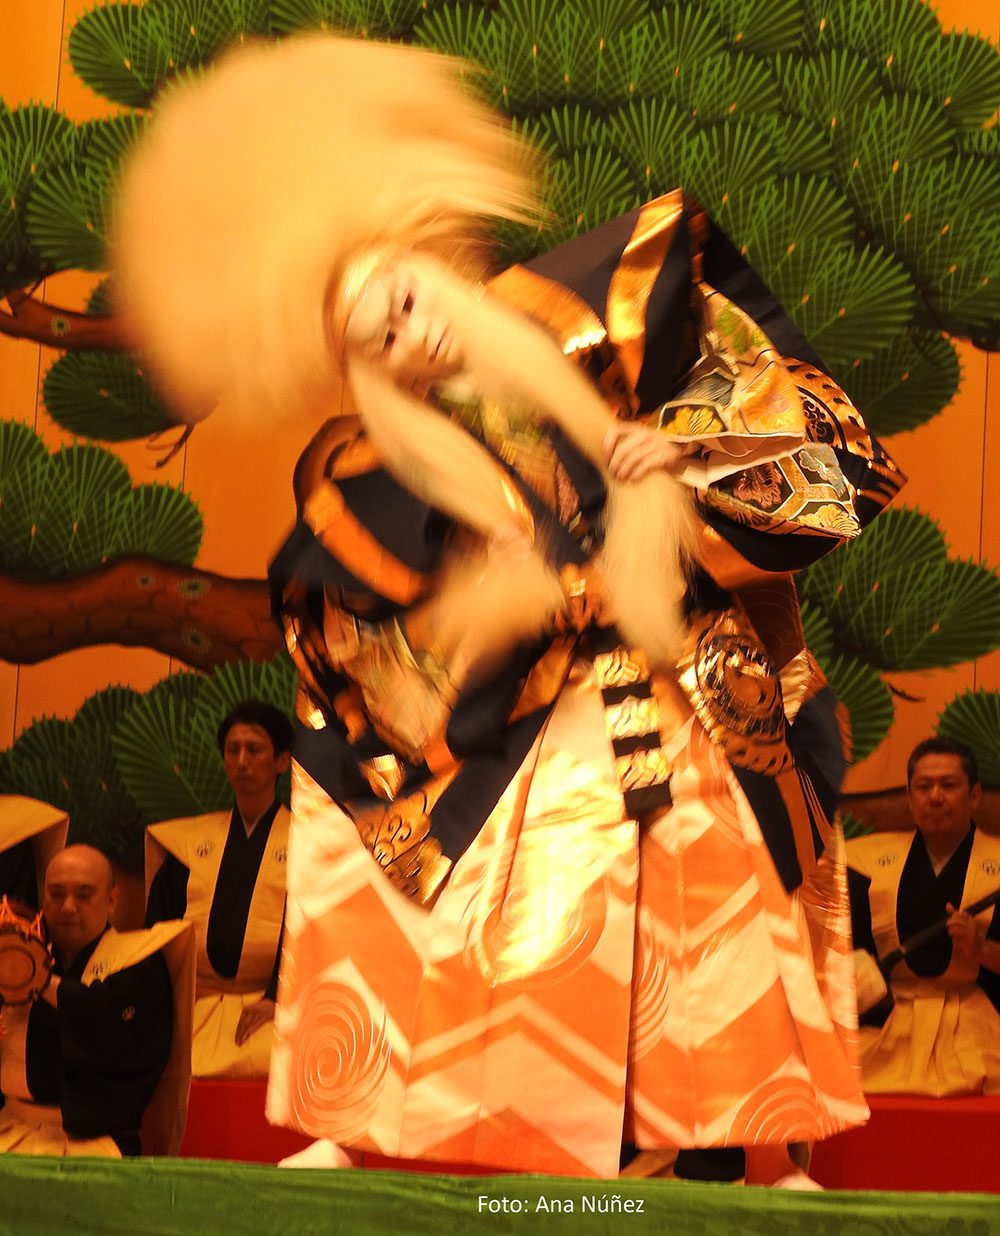 la belleza del teatro kabuki enamora a madrid